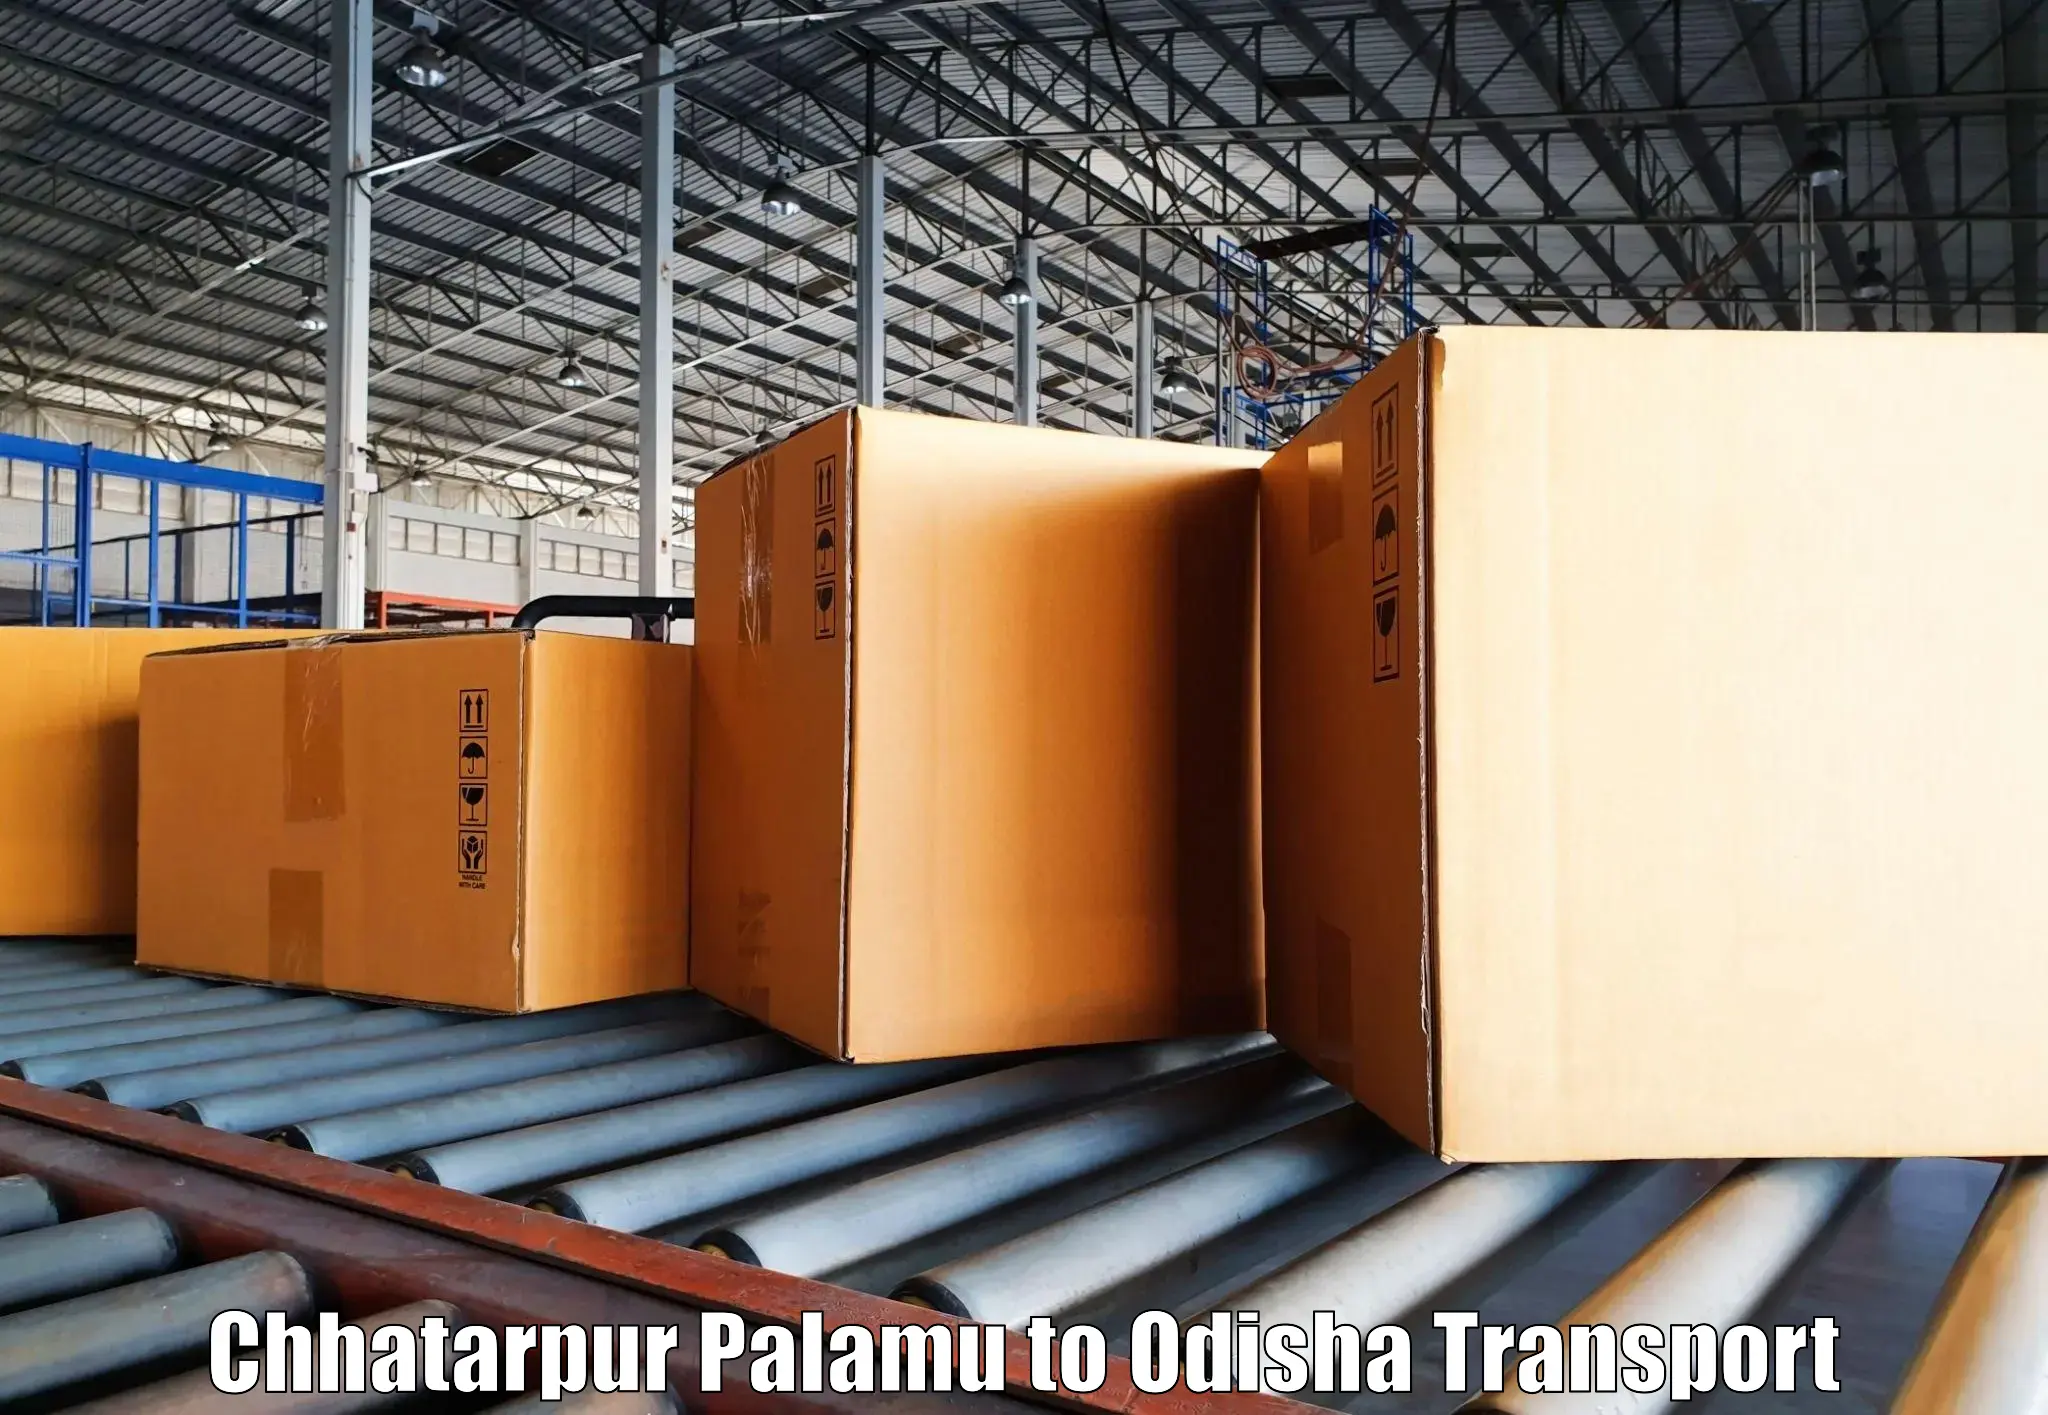 Lorry transport service Chhatarpur Palamu to Pipili